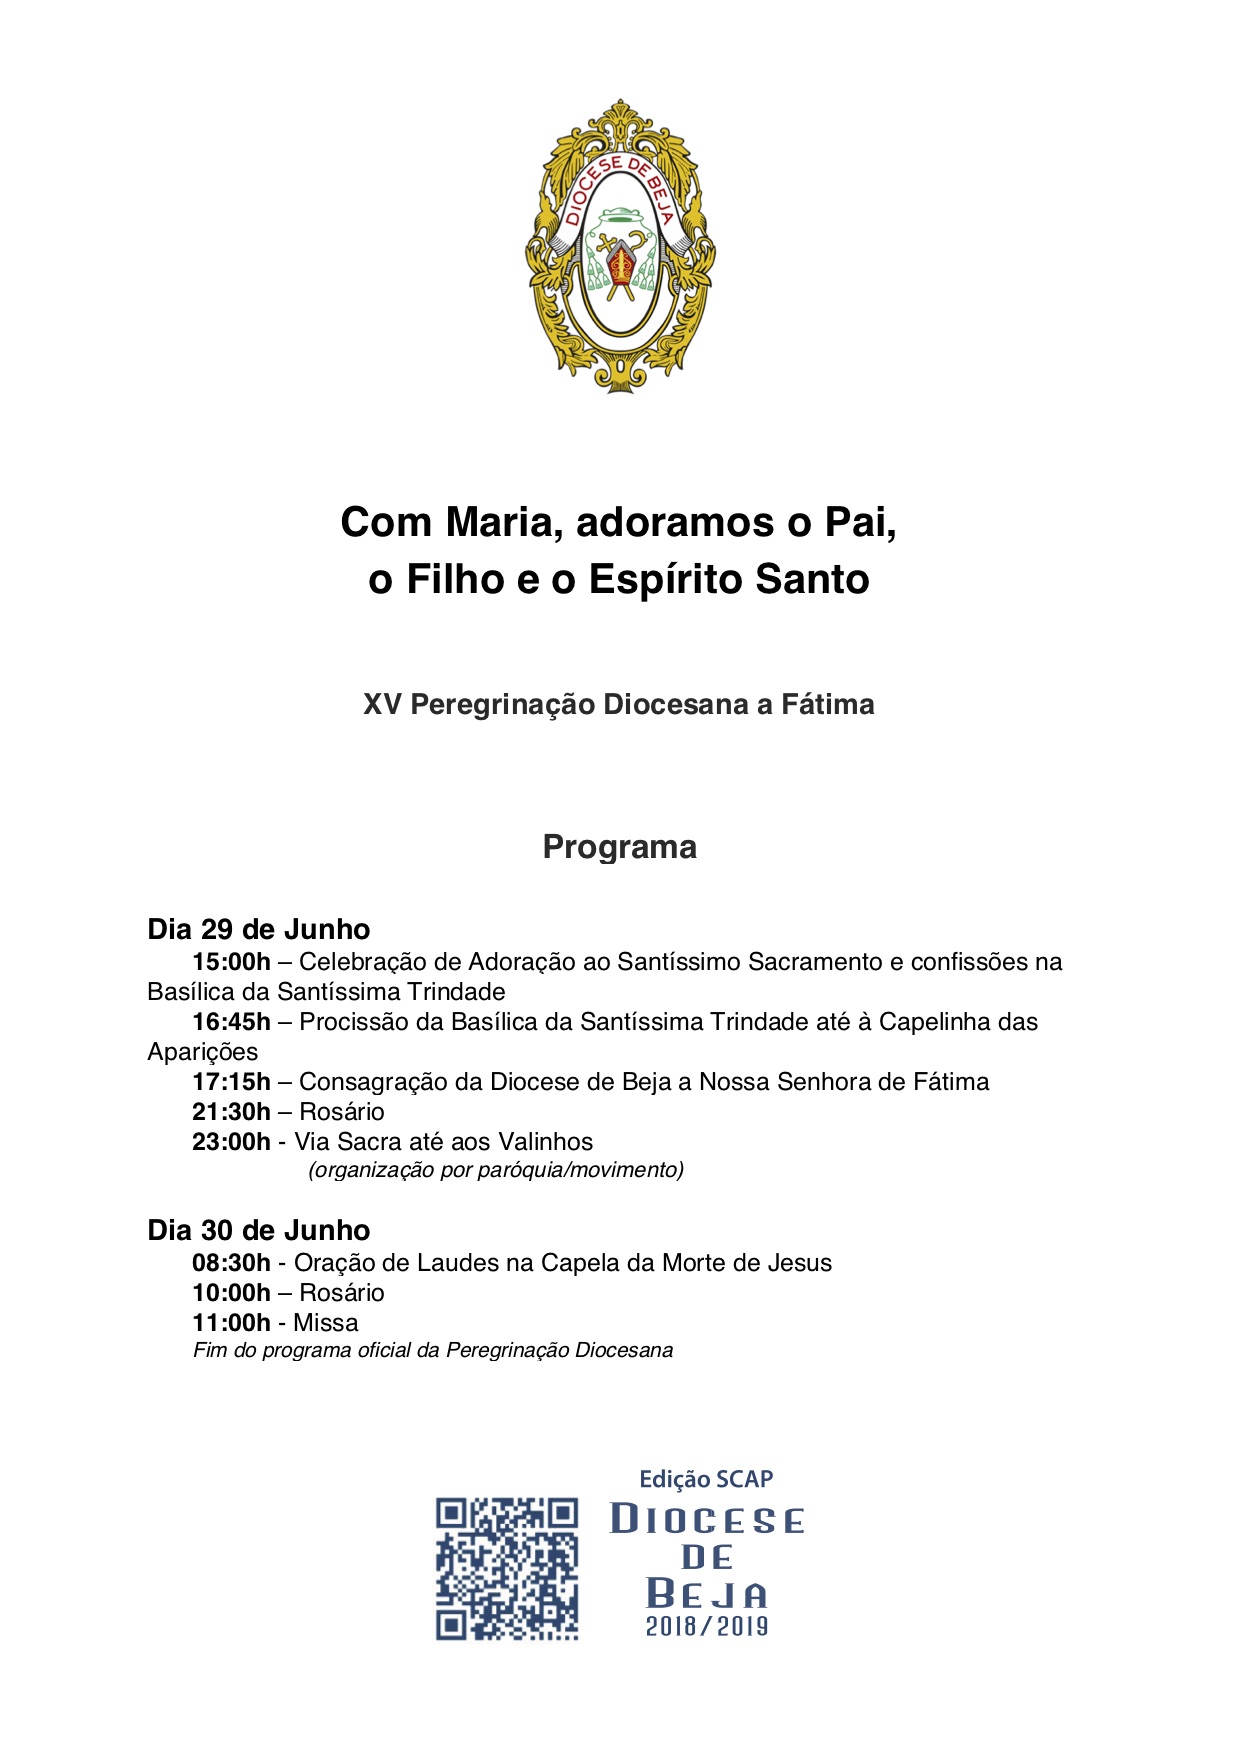 Programa da Peregrinação Diocesana a Fátima